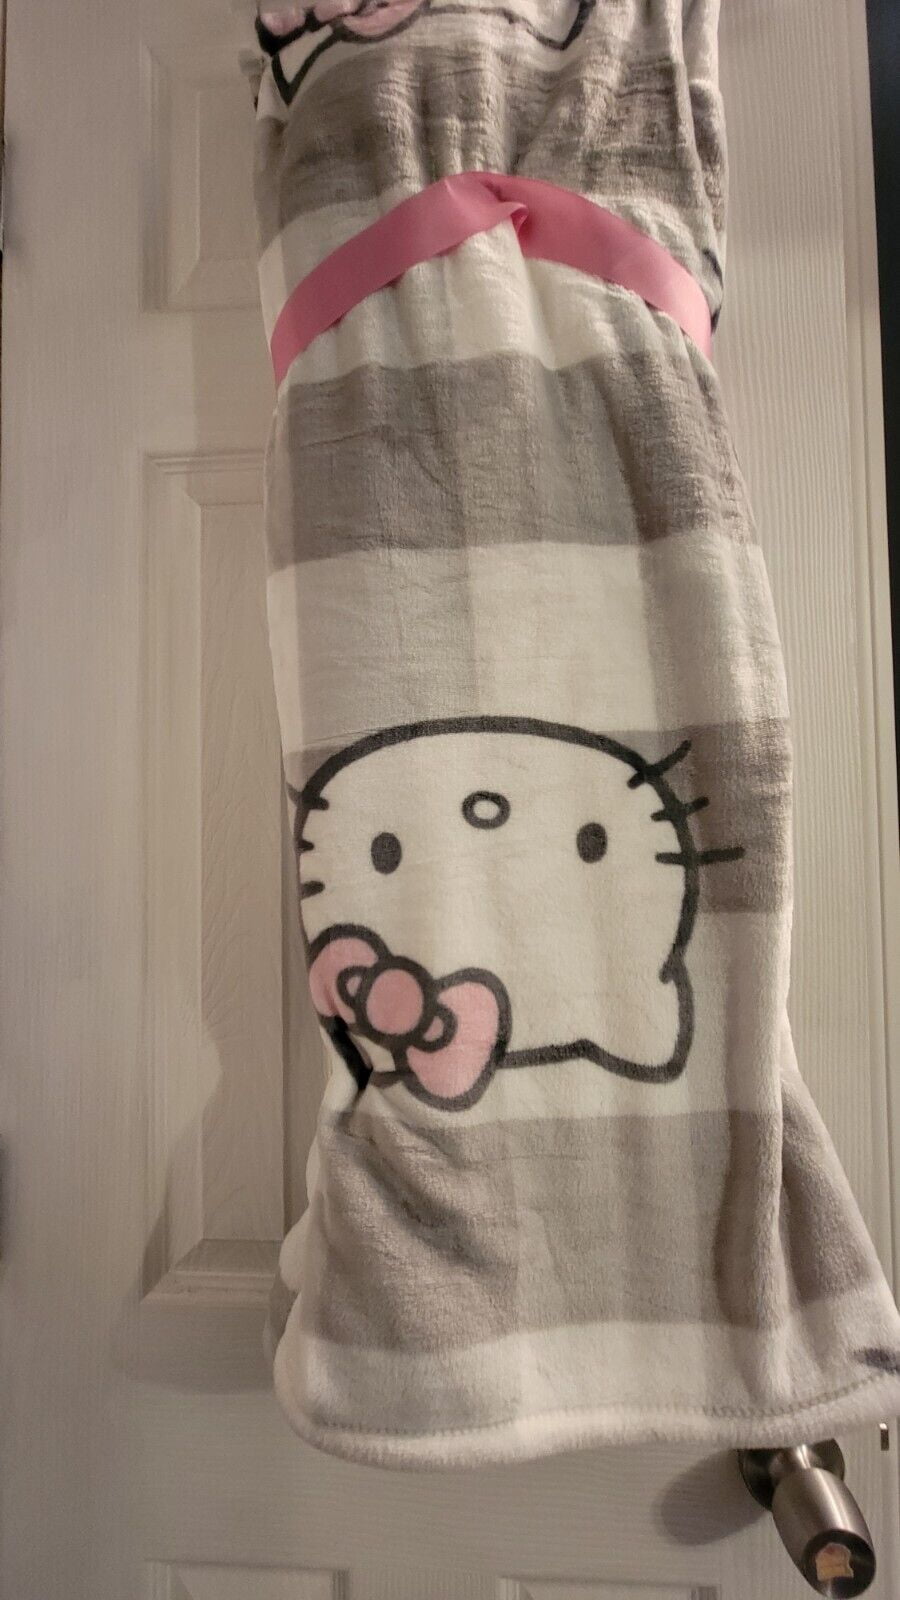 New Hello Kitty gray plaid blanket throw 50x70